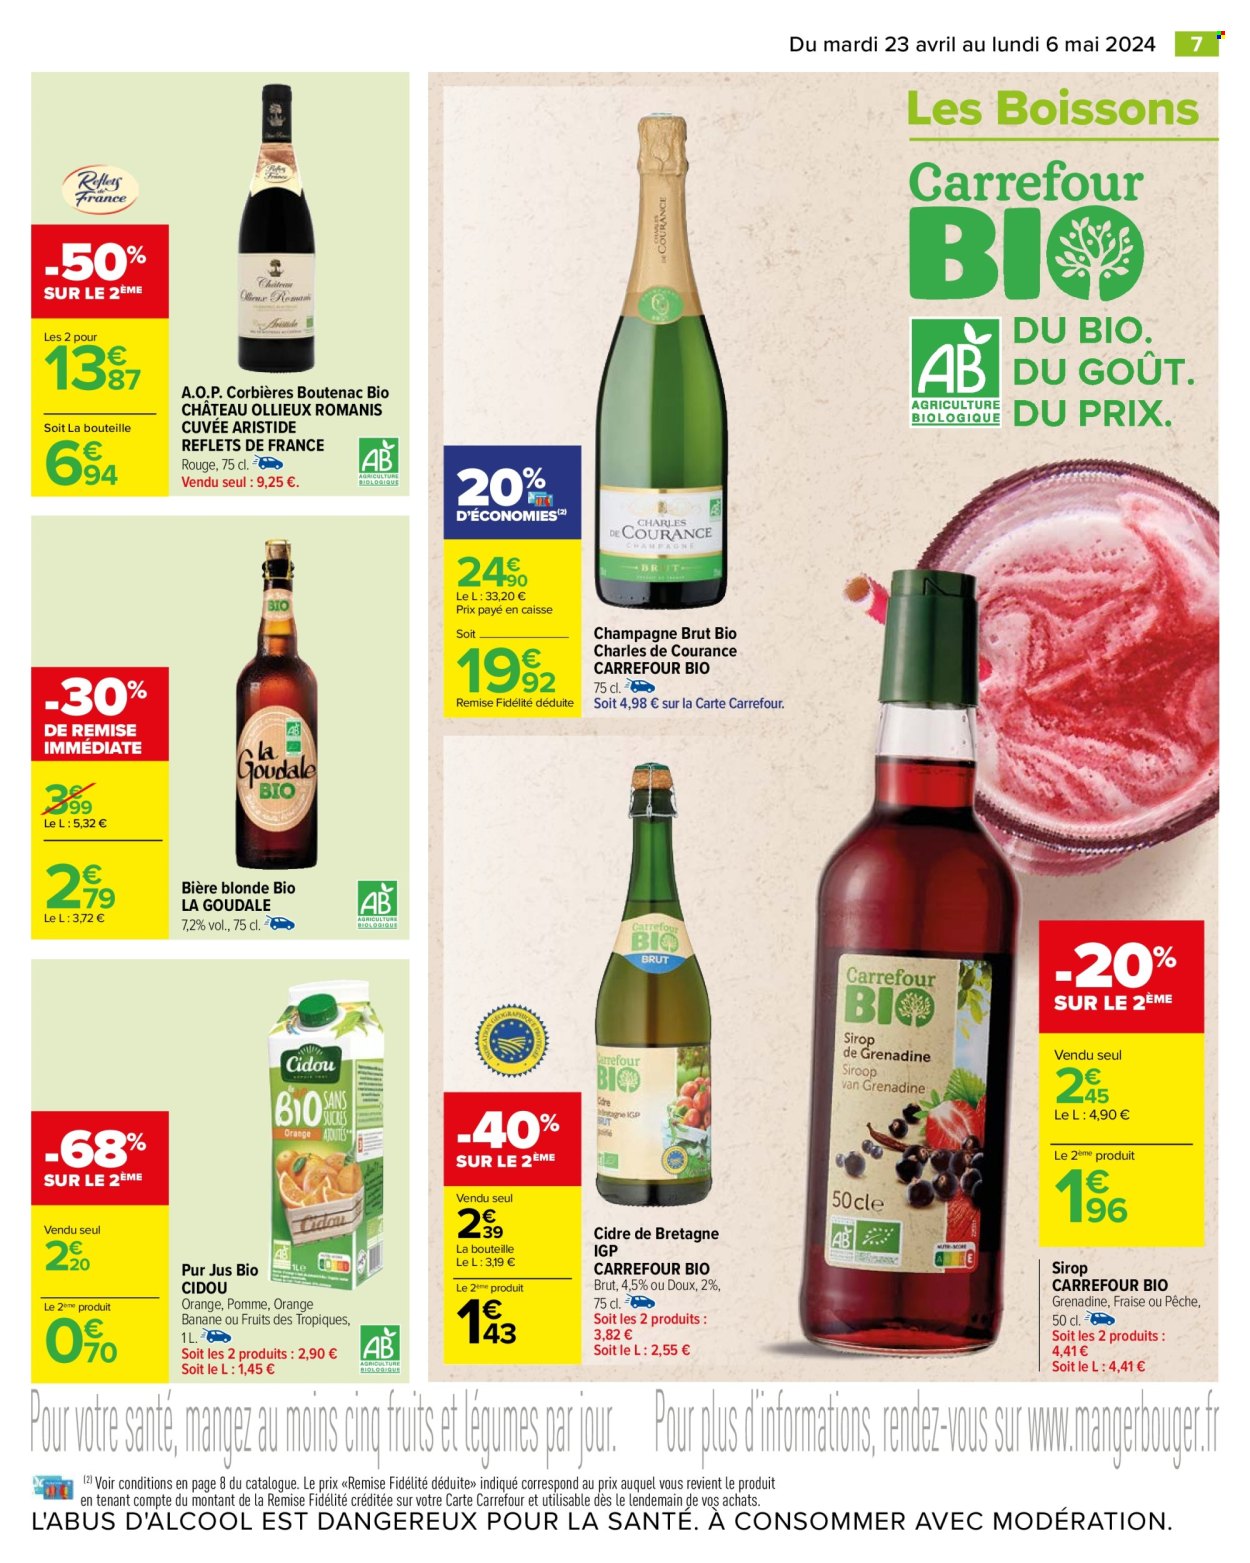 thumbnail - Catalogue Carrefour Hypermarchés - 23/04/2024 - 06/05/2024 - Produits soldés - alcool, Corbières, vin, bière, bière blonde, Goudale, sirop, cidre, jus, pur jus, Cidou. Page 9.